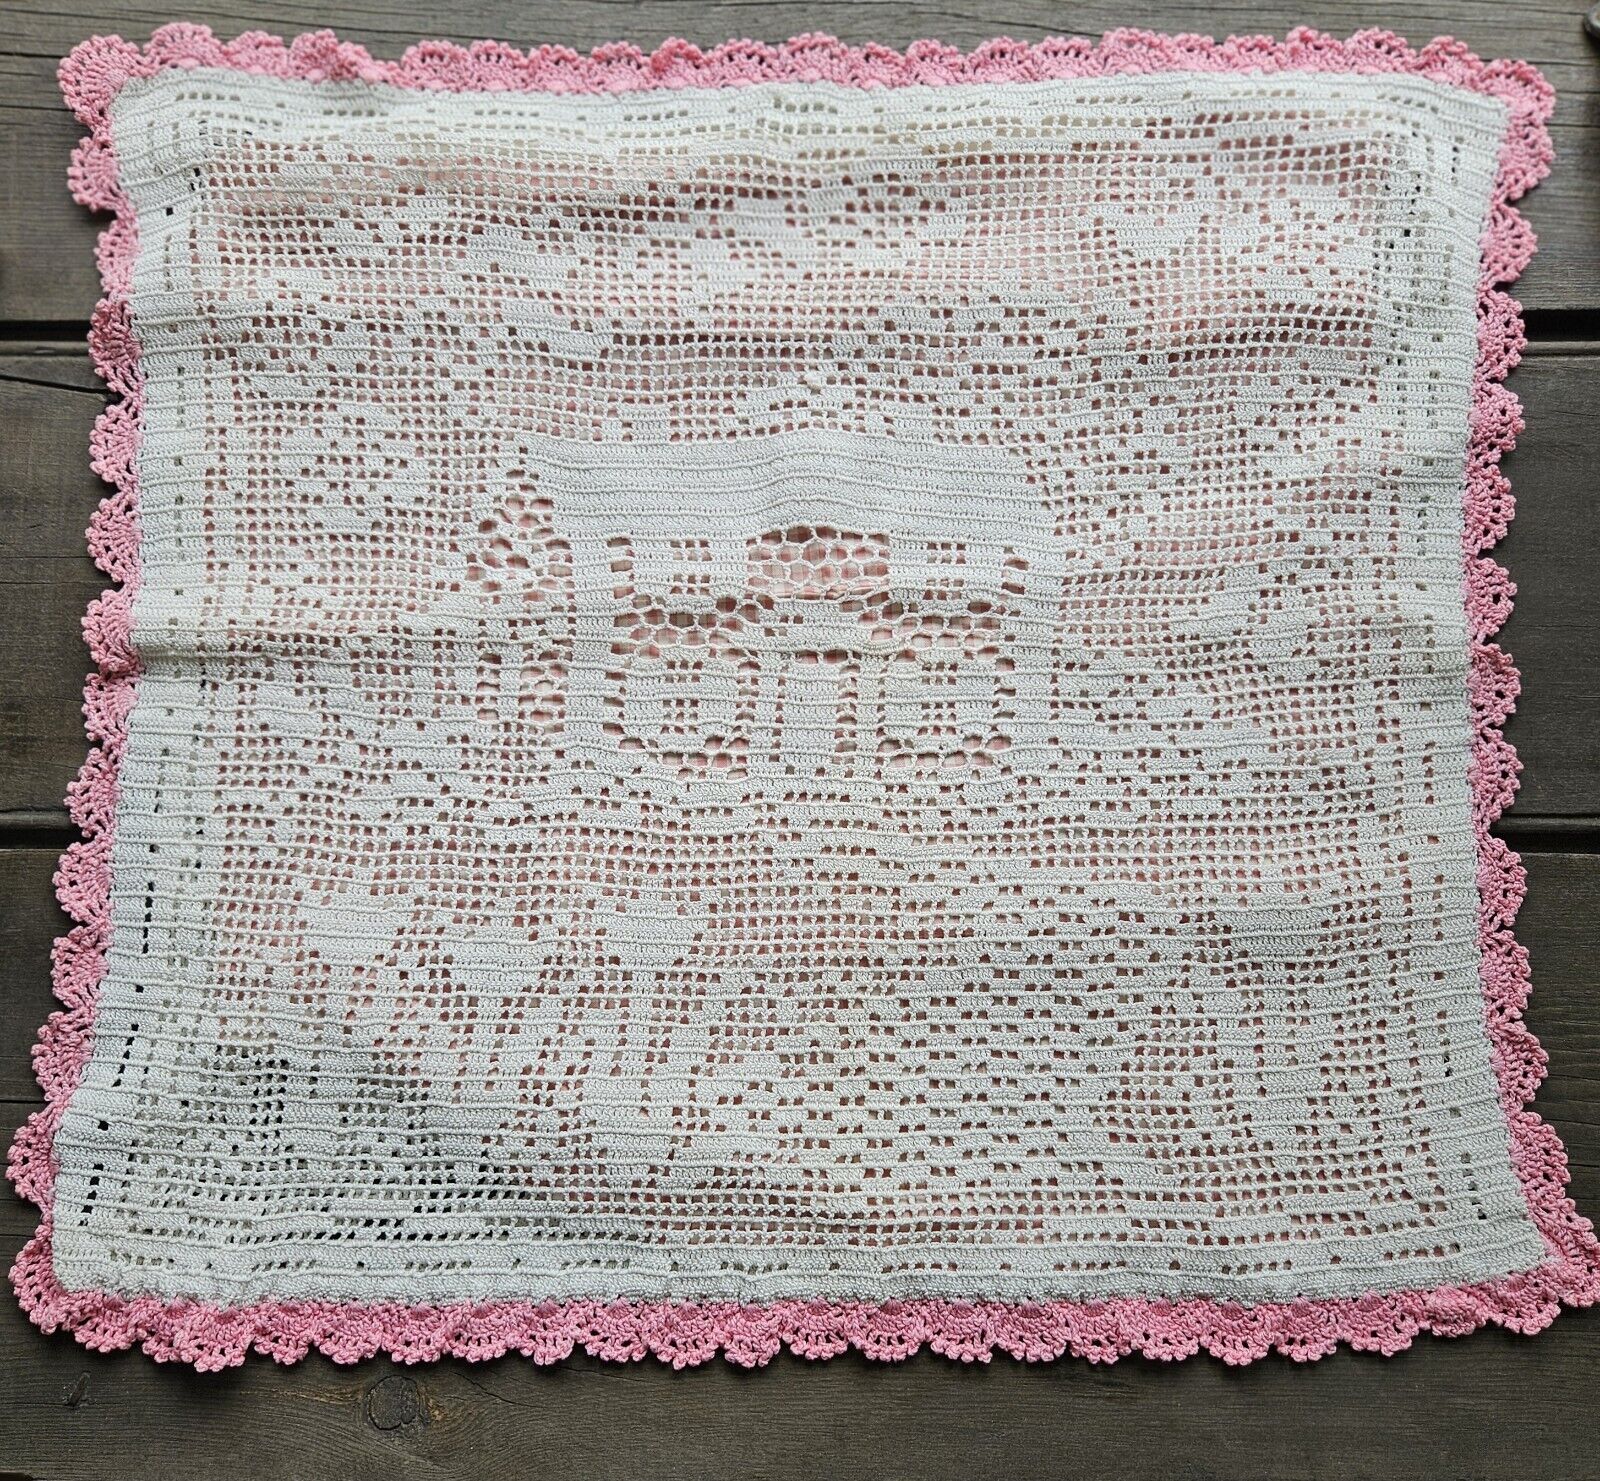 Large Vintage Figural Lace Pillow Cover Crochet Trim Sham Fat Quarter Fabric Lot